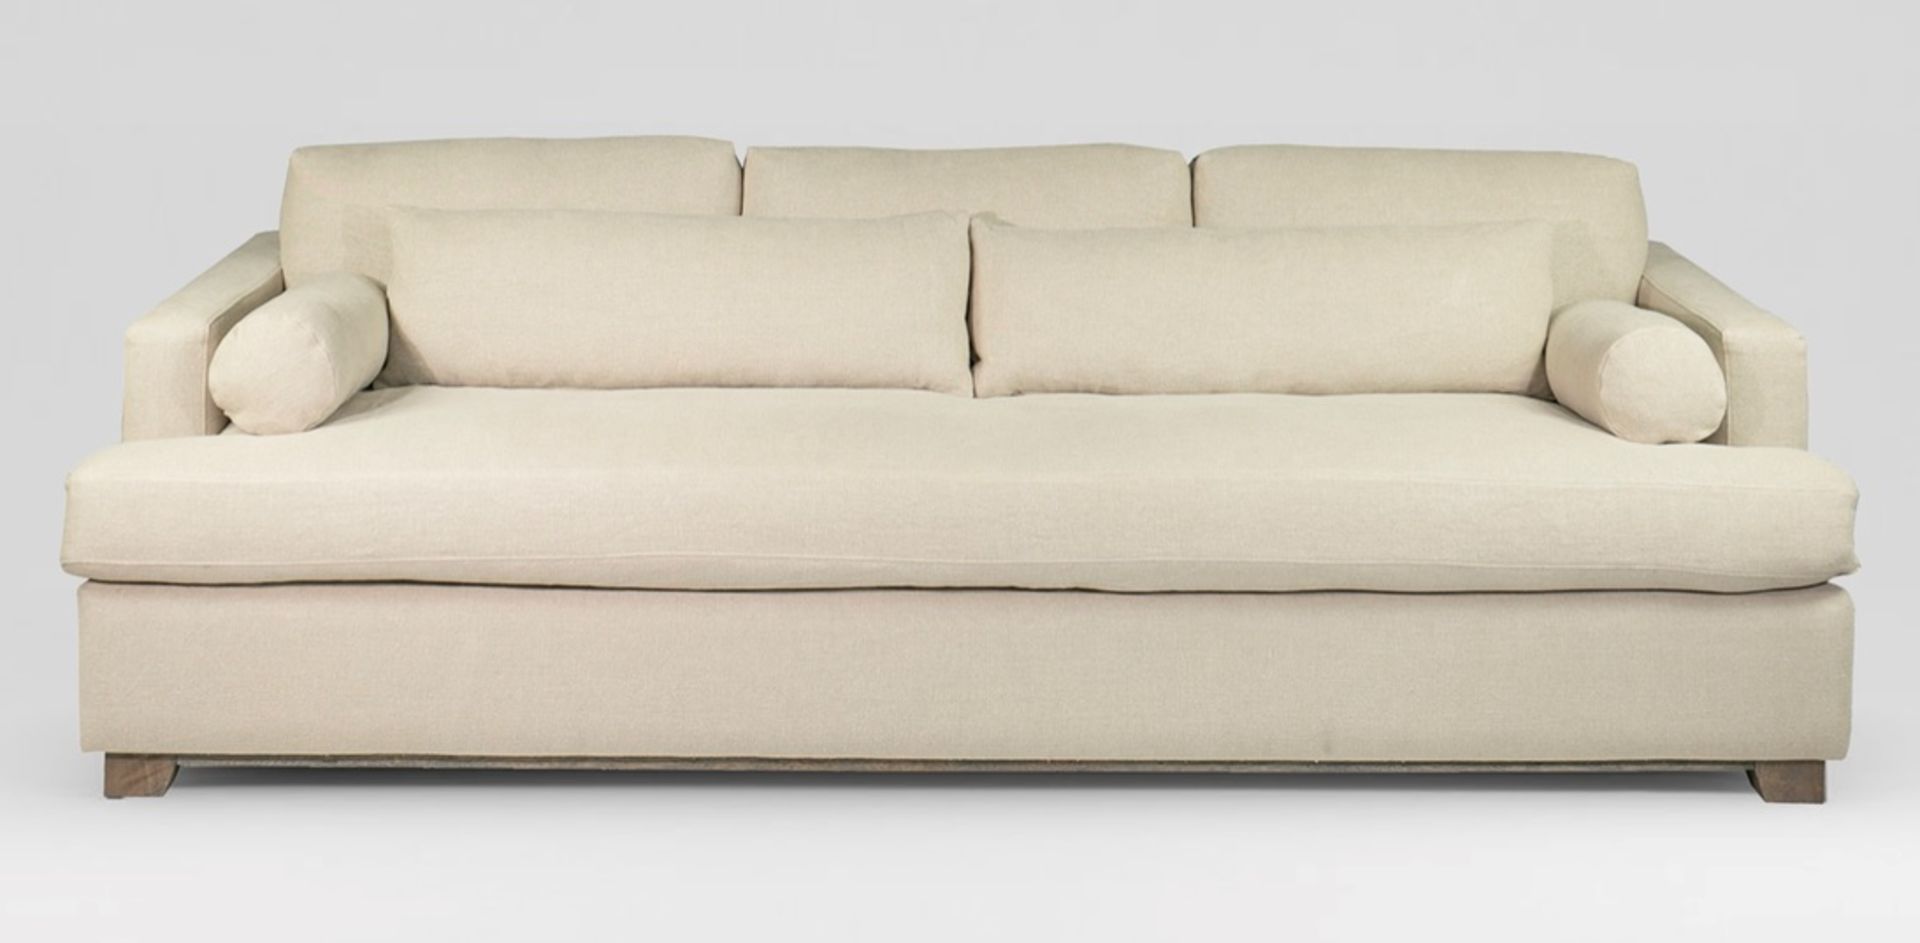 Eveleyn Sofa Deep Media sofa in Libeco Belgian Linen Oatmeal Linen - An exceptionally spacious and